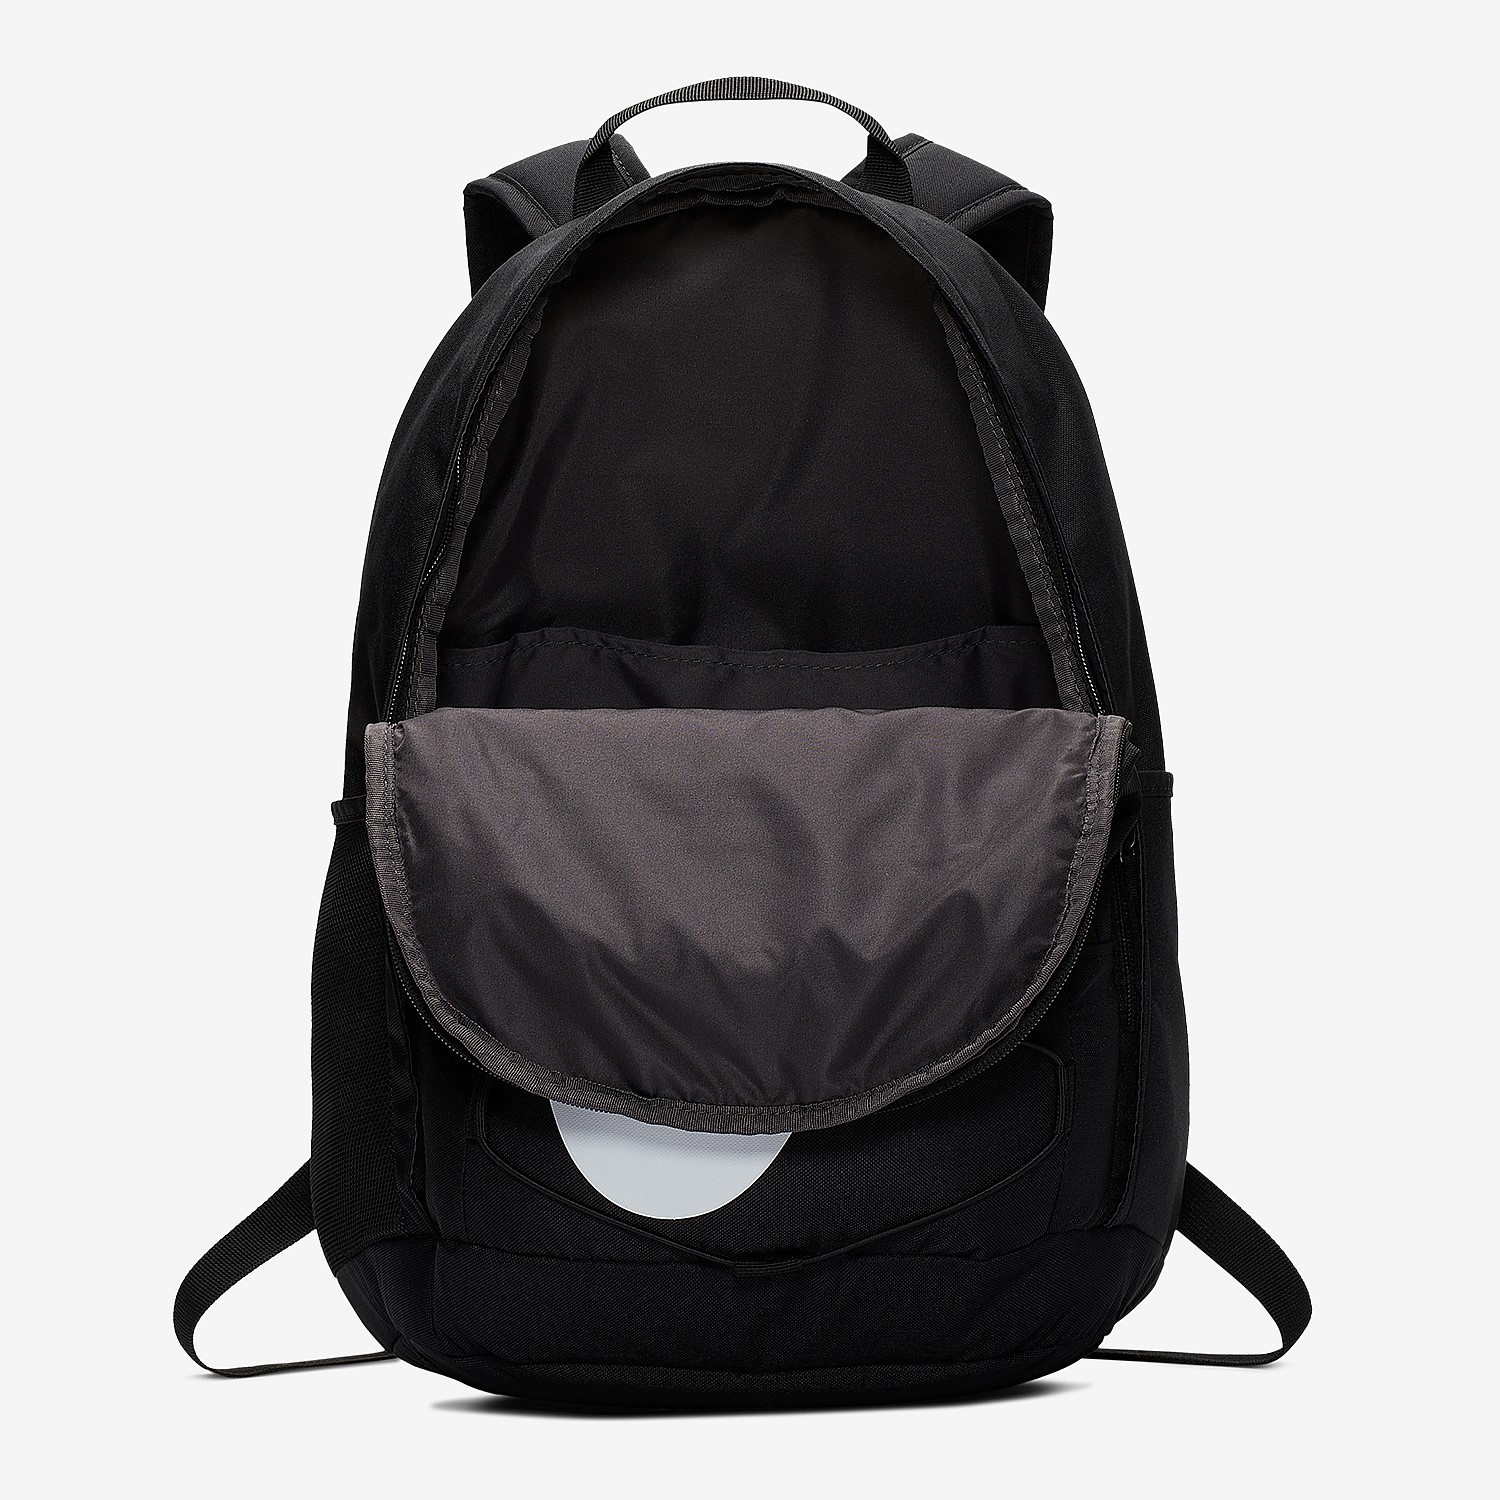 Hayward 2.0 Backpack